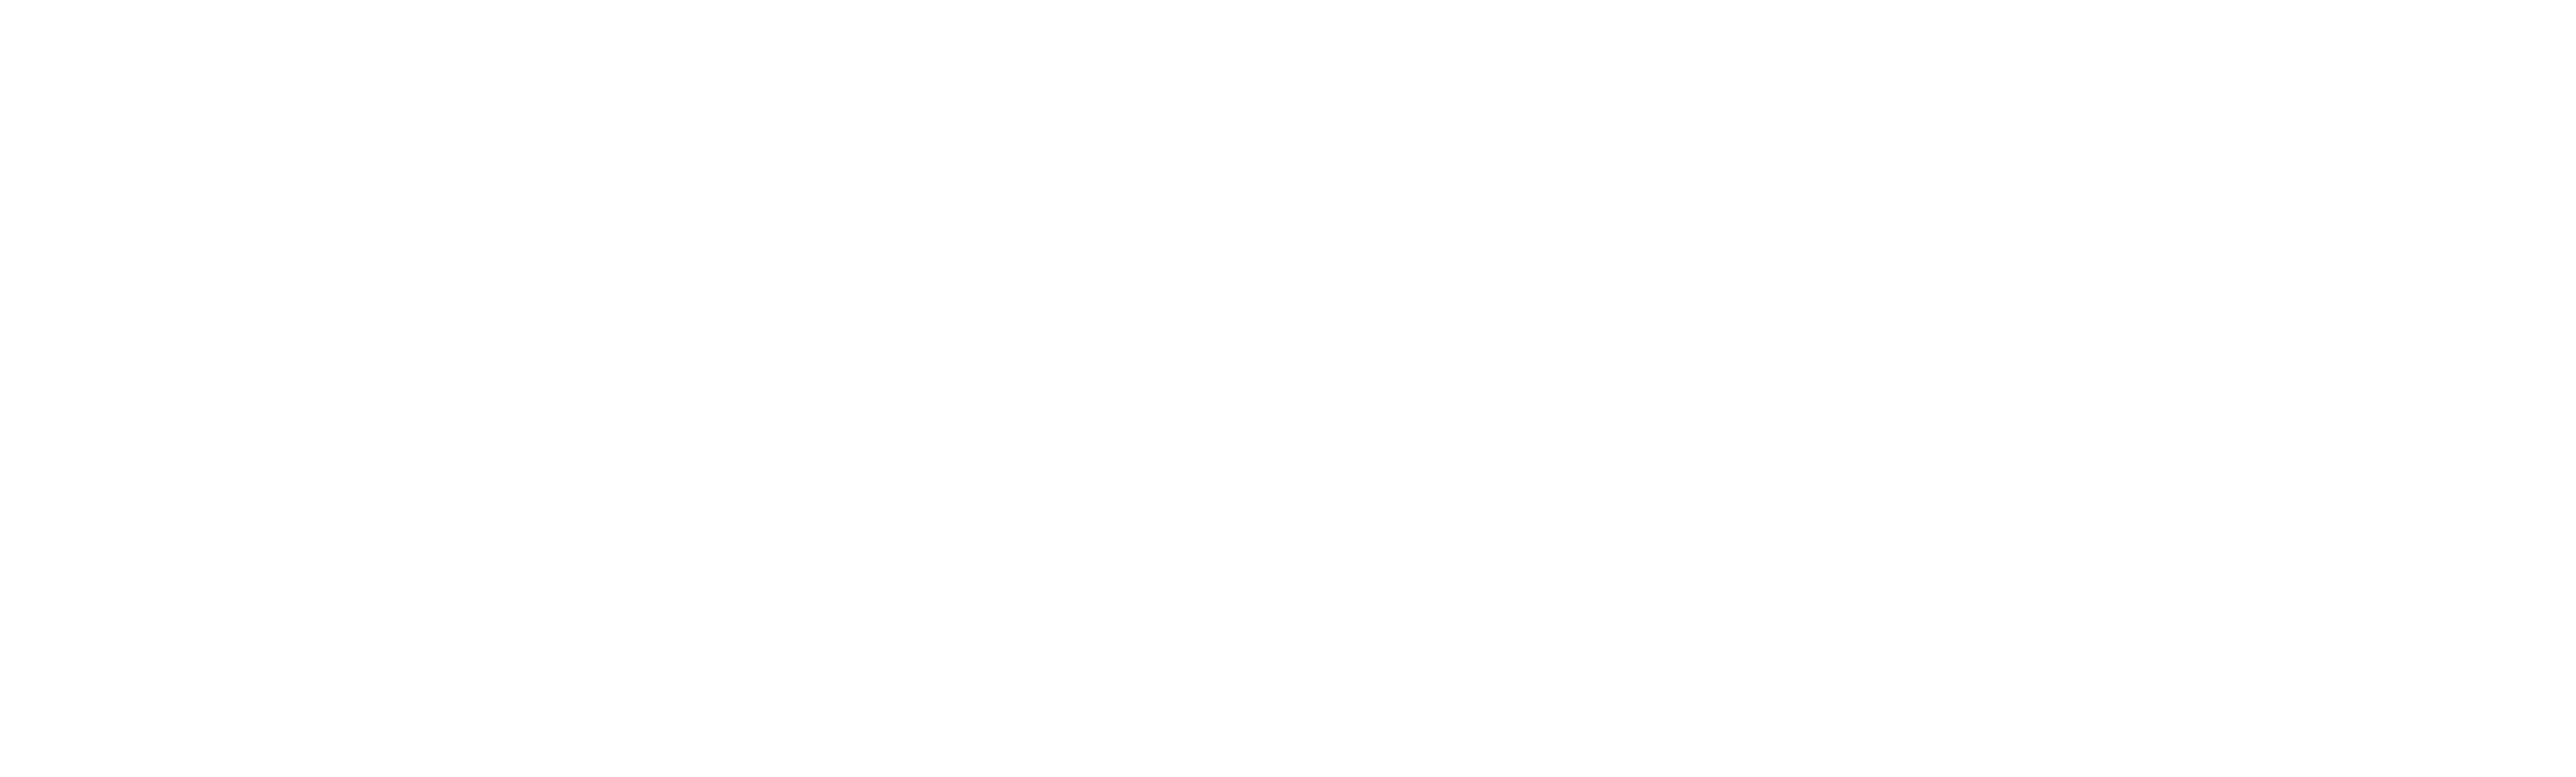 Pioneer Vision Group